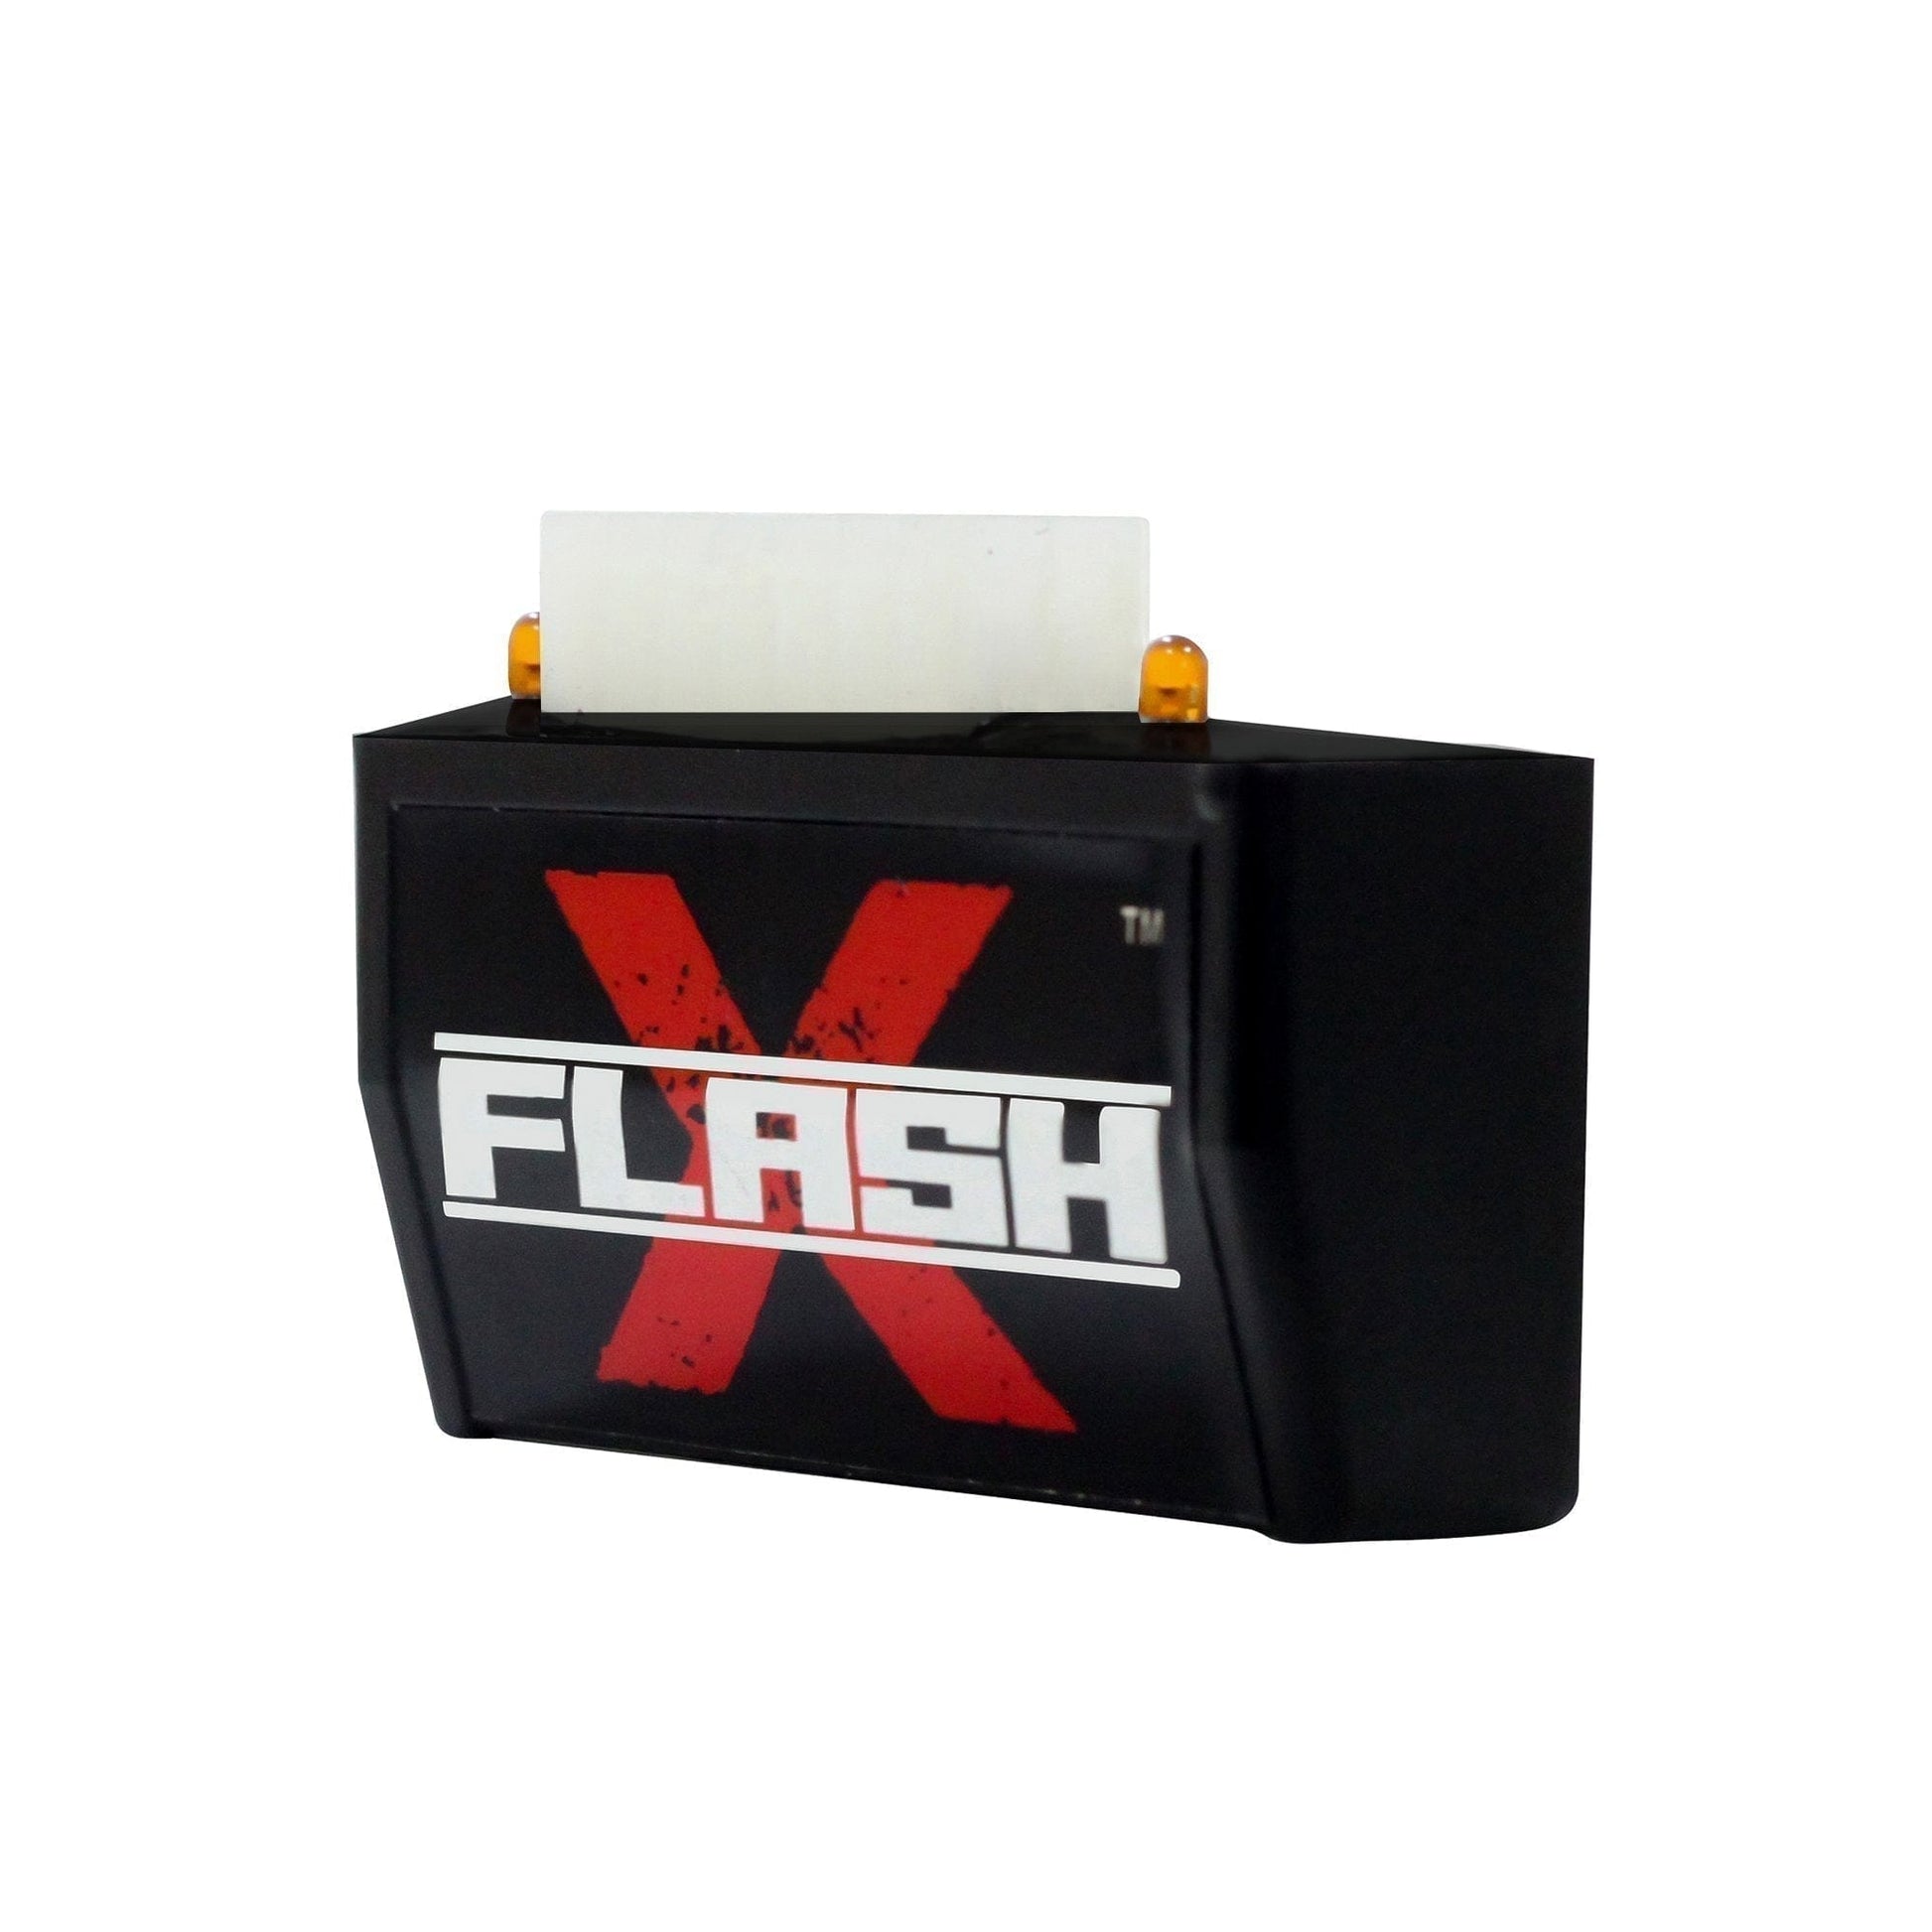 Destination Moto YAMAHA FZ 25 Flash X Hazard Lights Flash Module, Blinker,Flasher